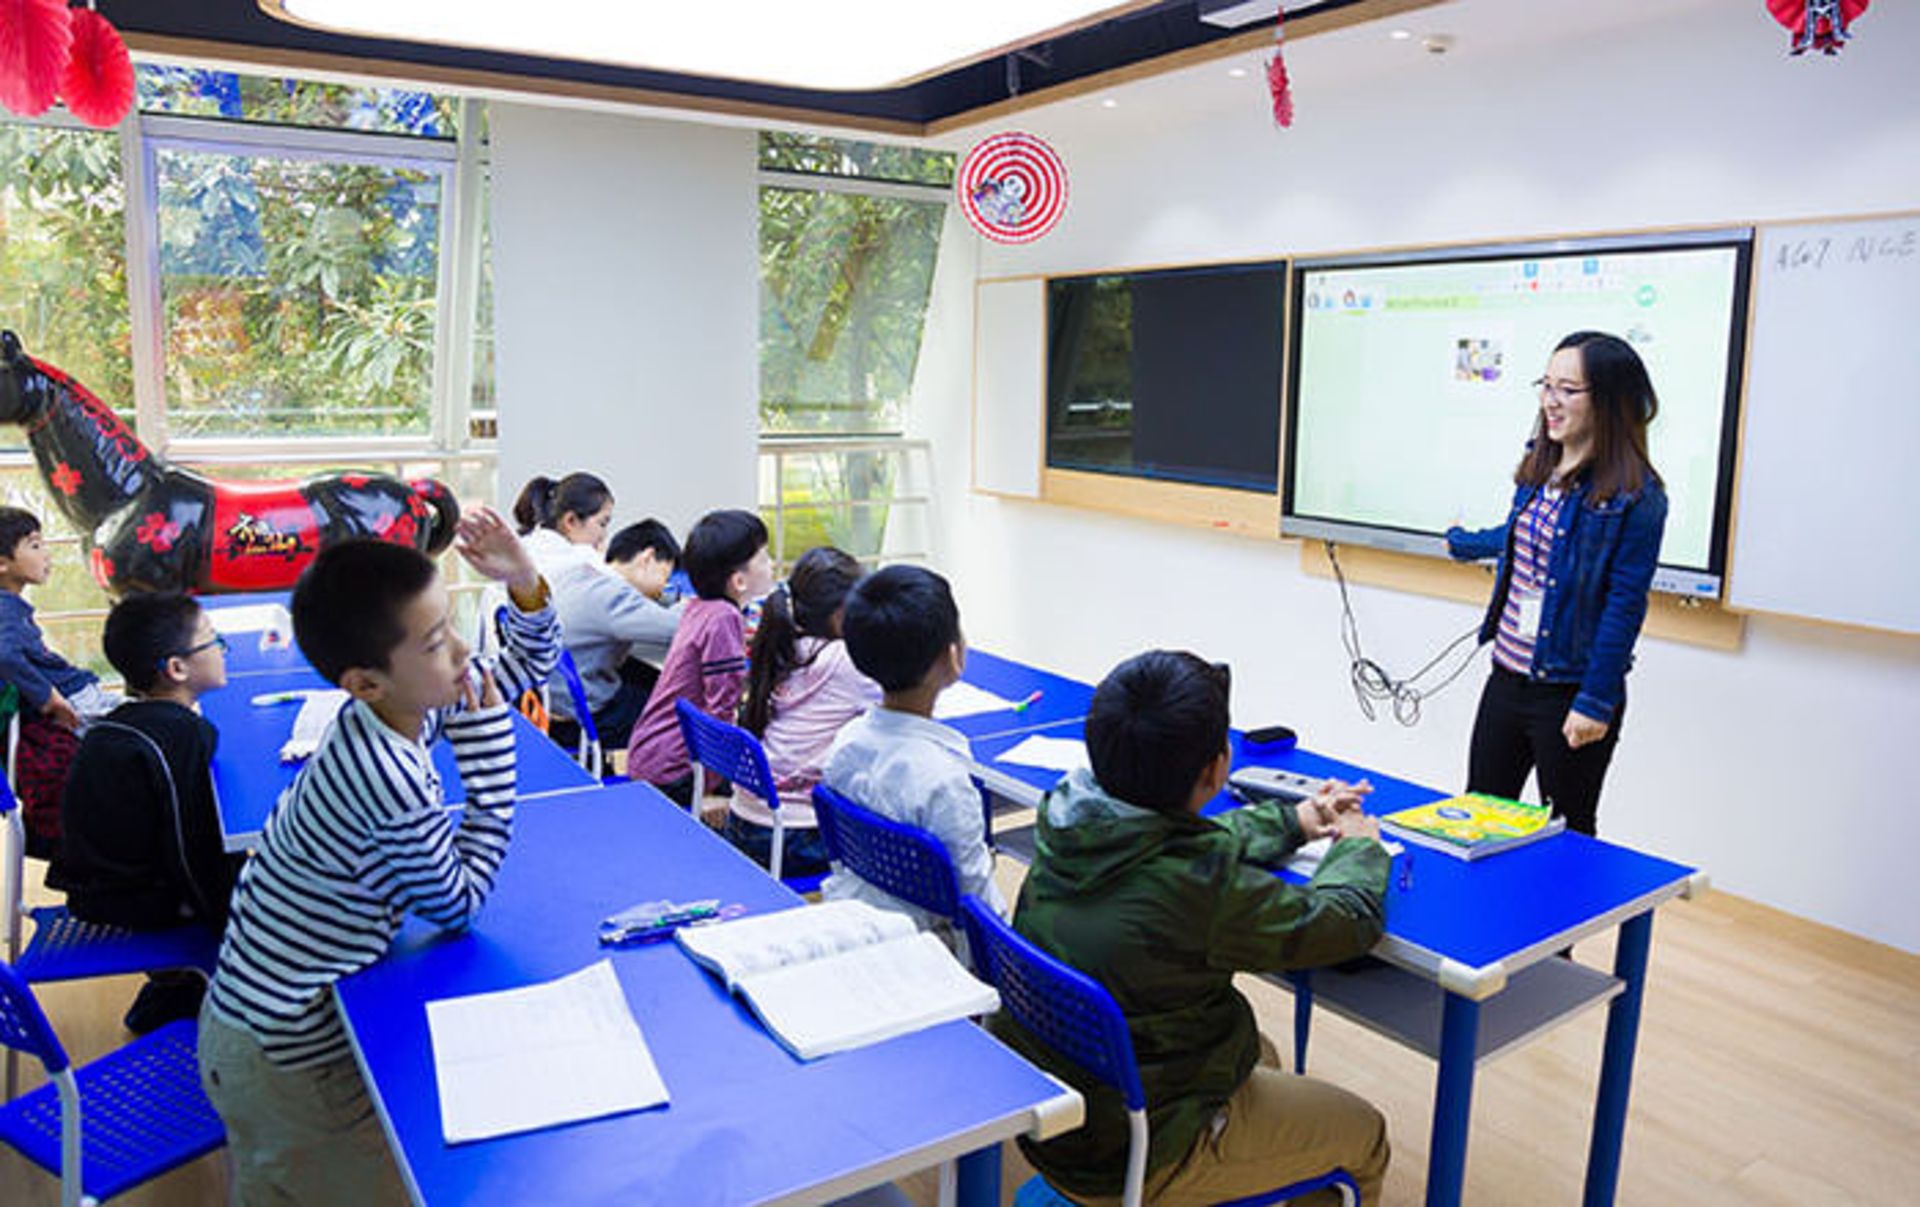 آموزش به کمک هوش مصنوعی در چین